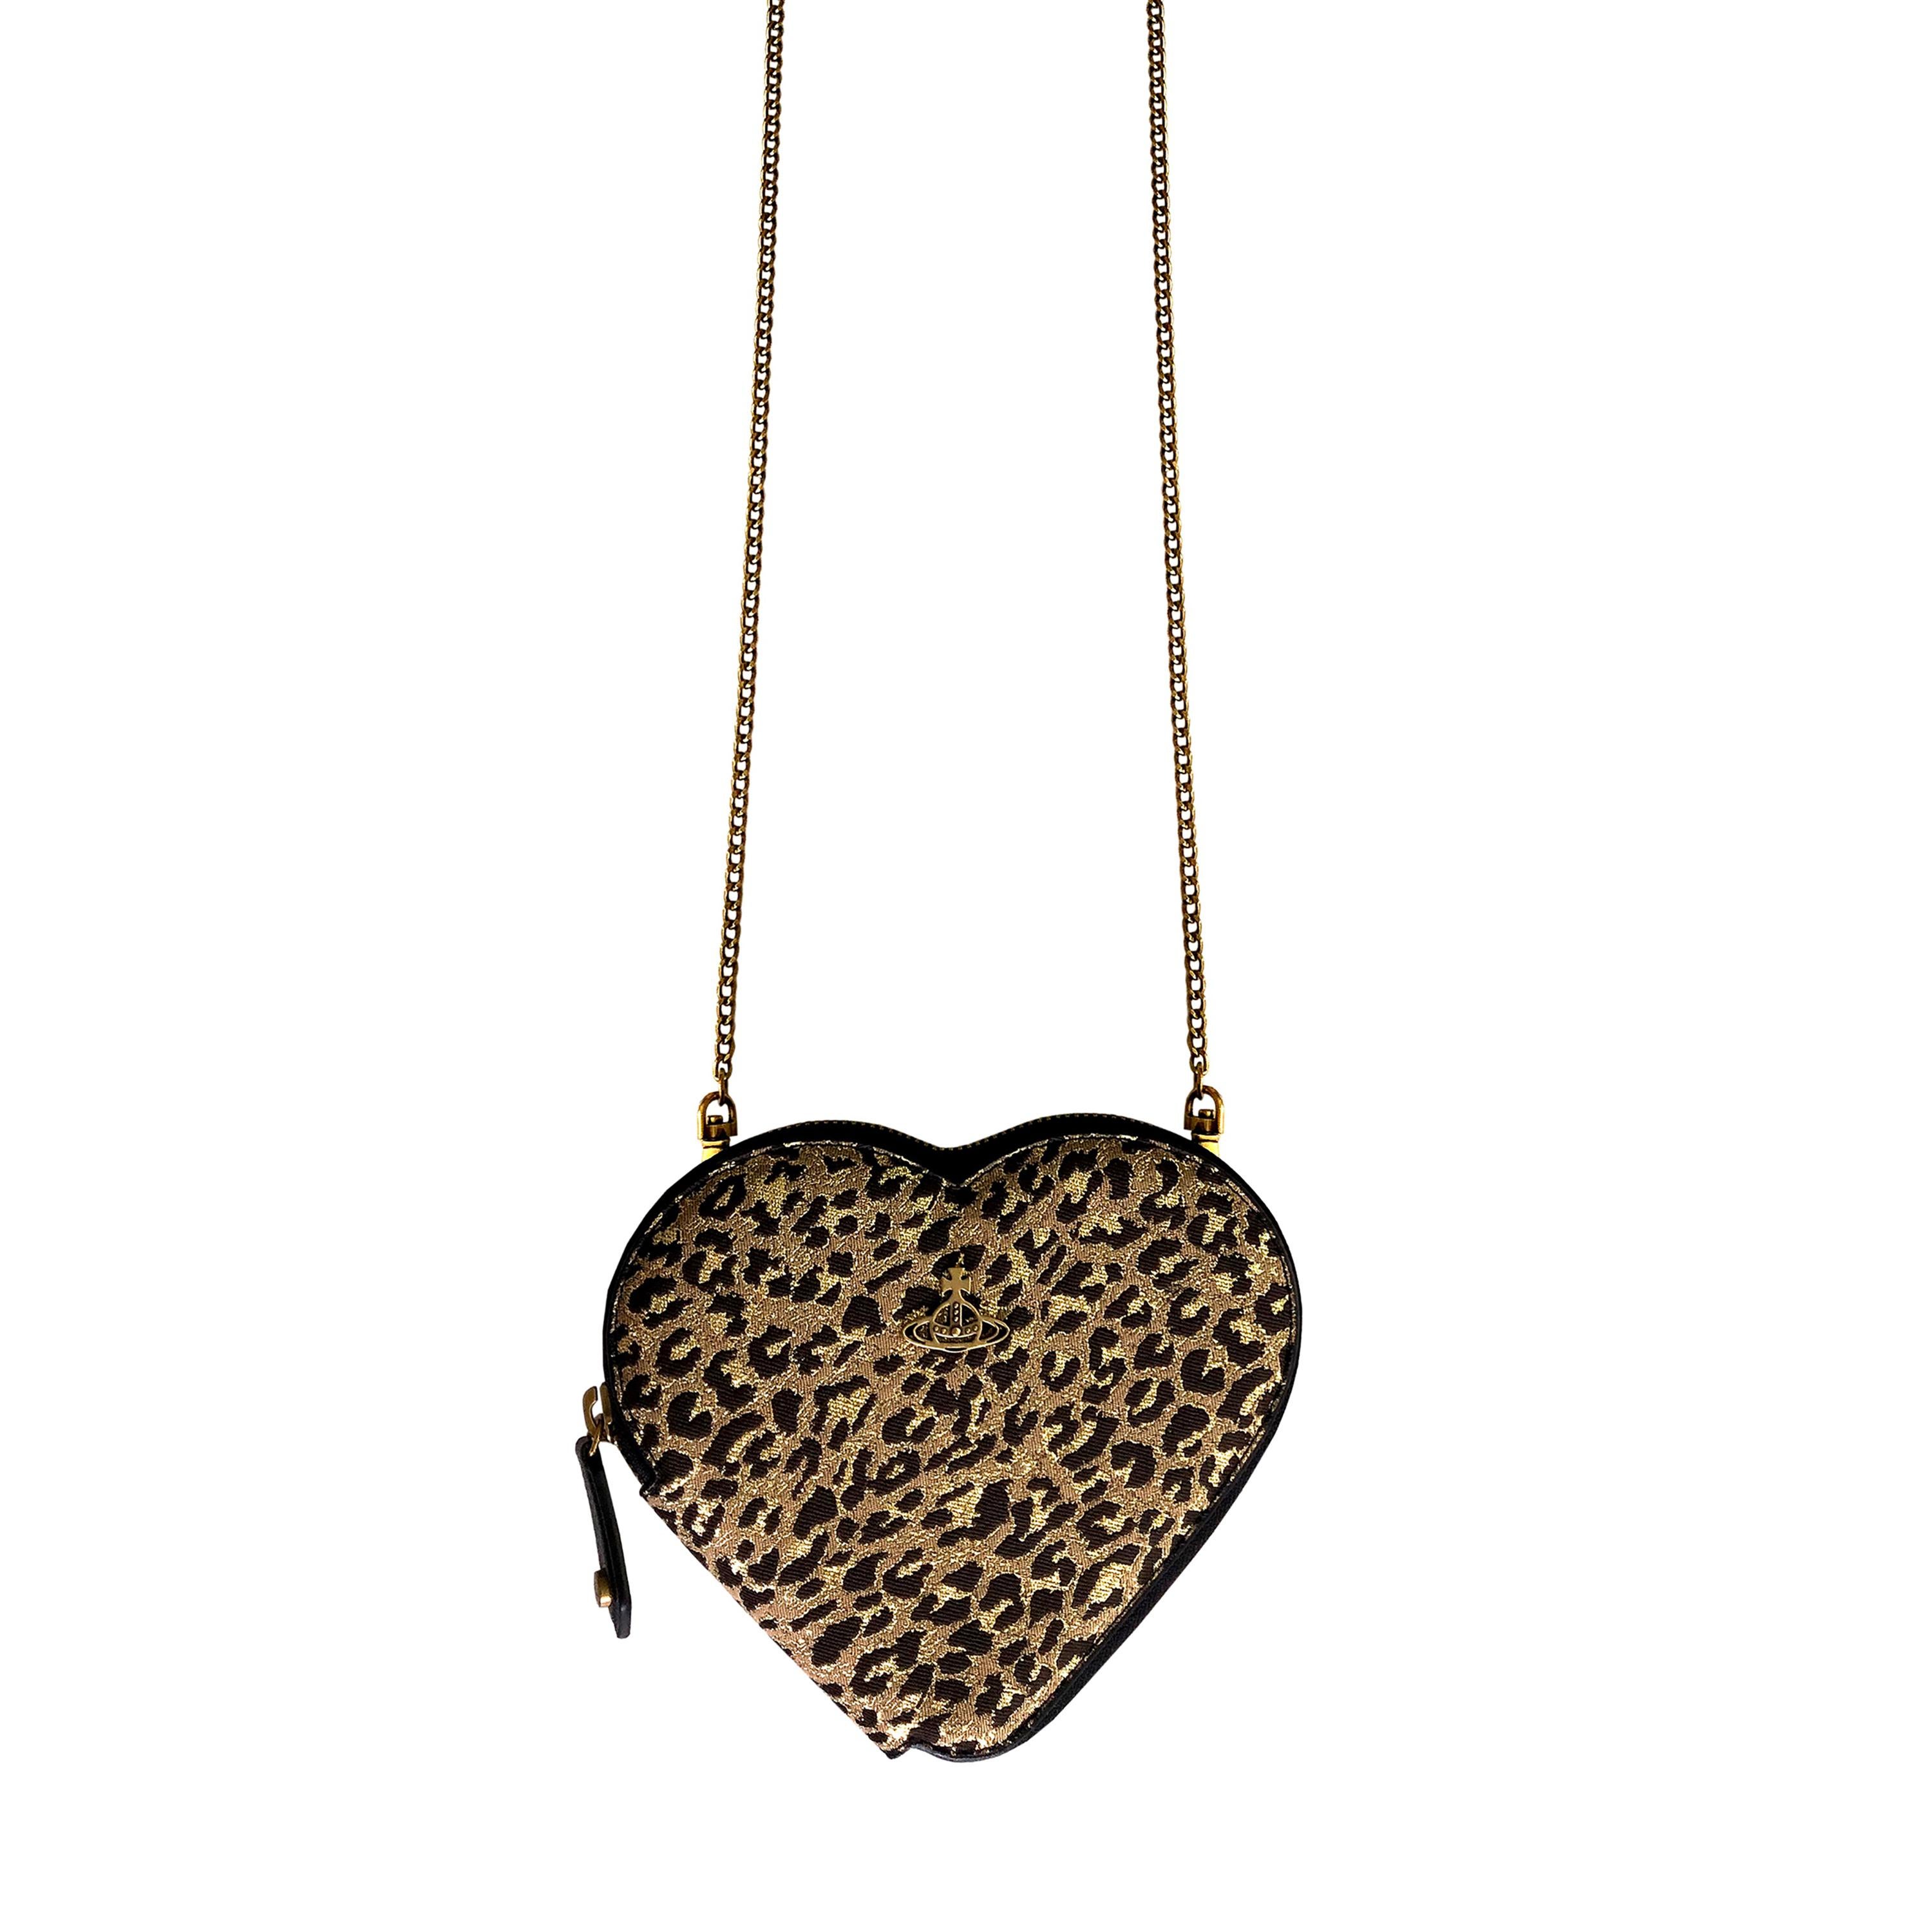 Détails du produit : Vivienne Westwood - Gold Leopard Jacquard Heart Crossbody Bag - Bandoulière en laiton réglable / amovible - Vegan - NEUF avec étiquettes - Intérieur spacieux - Doublure intérieure en satin imprimé 'Orb' - Fermeture éclair